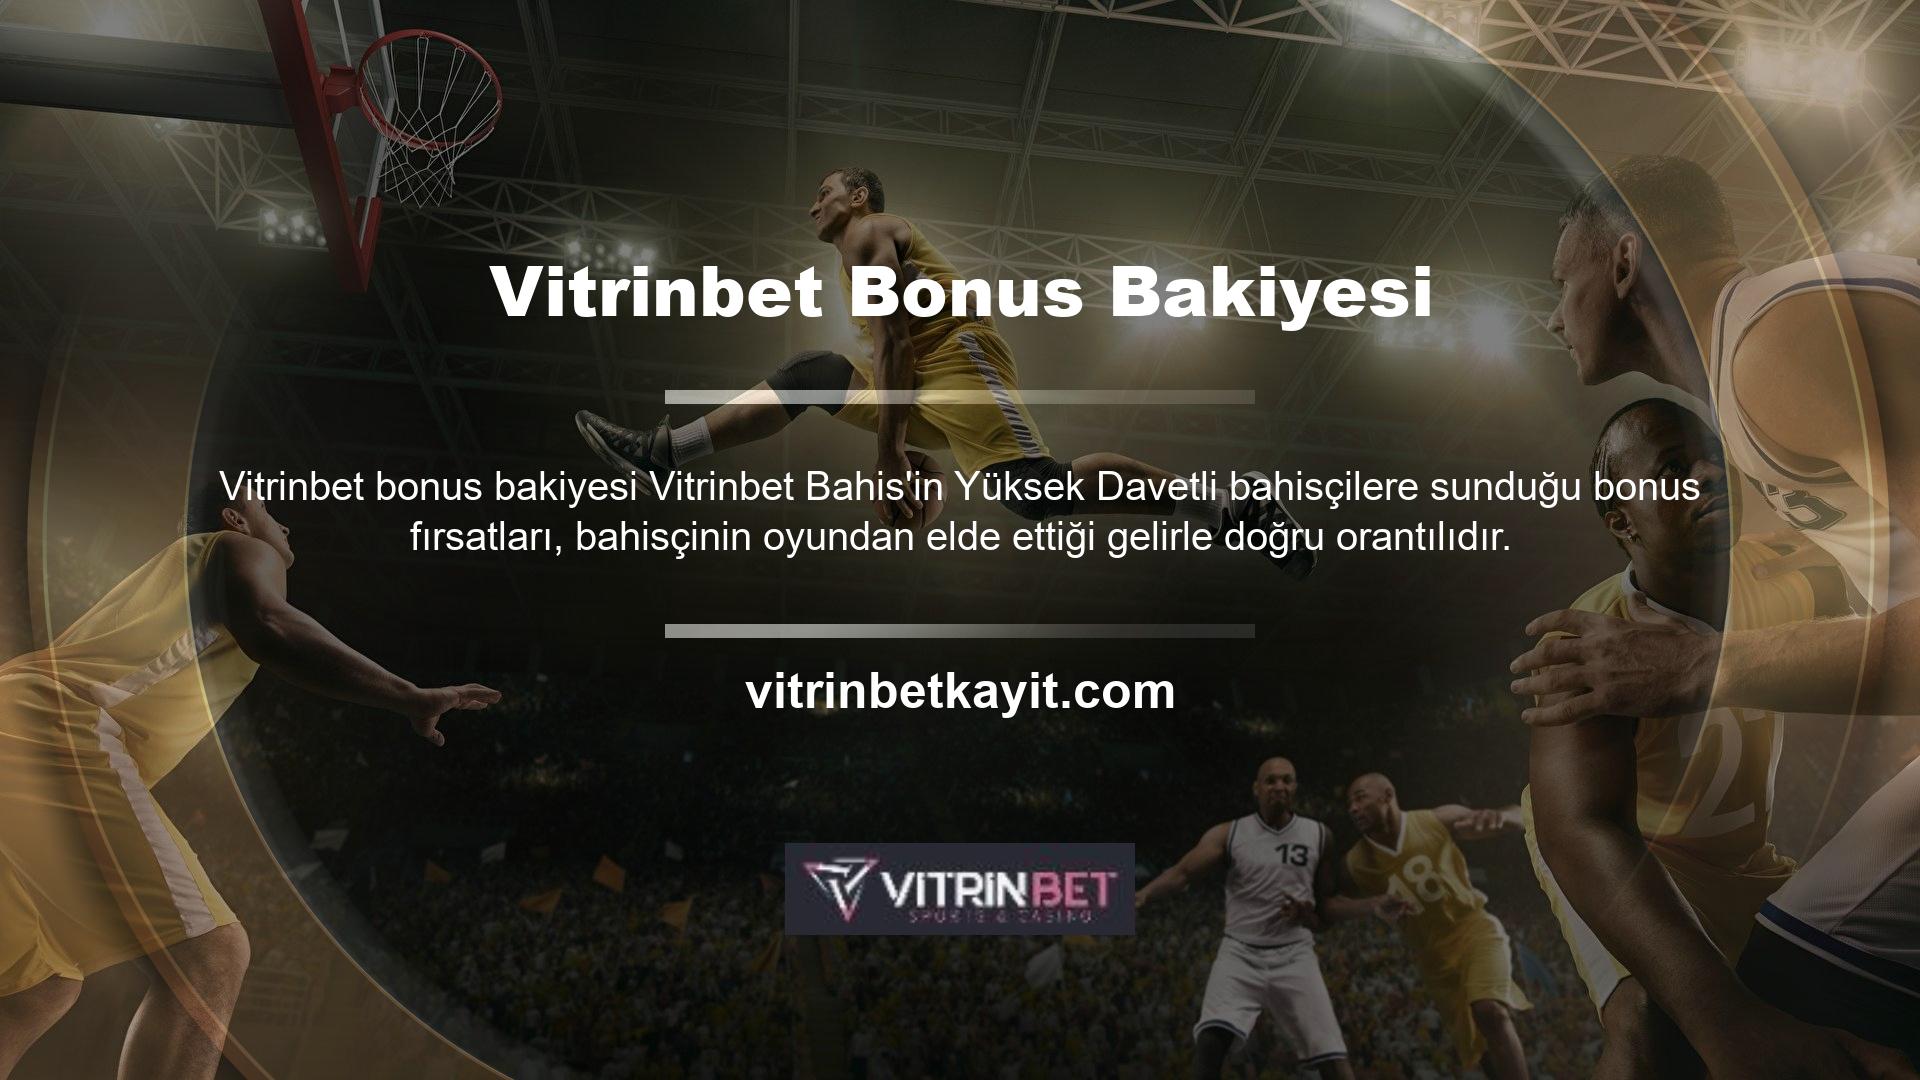 Ayrıca oyuncular bu web sitesini farklı ülkelerden ve Türkiye'den diğer oyuncularla etkileşime geçmek için de kullanabilirler